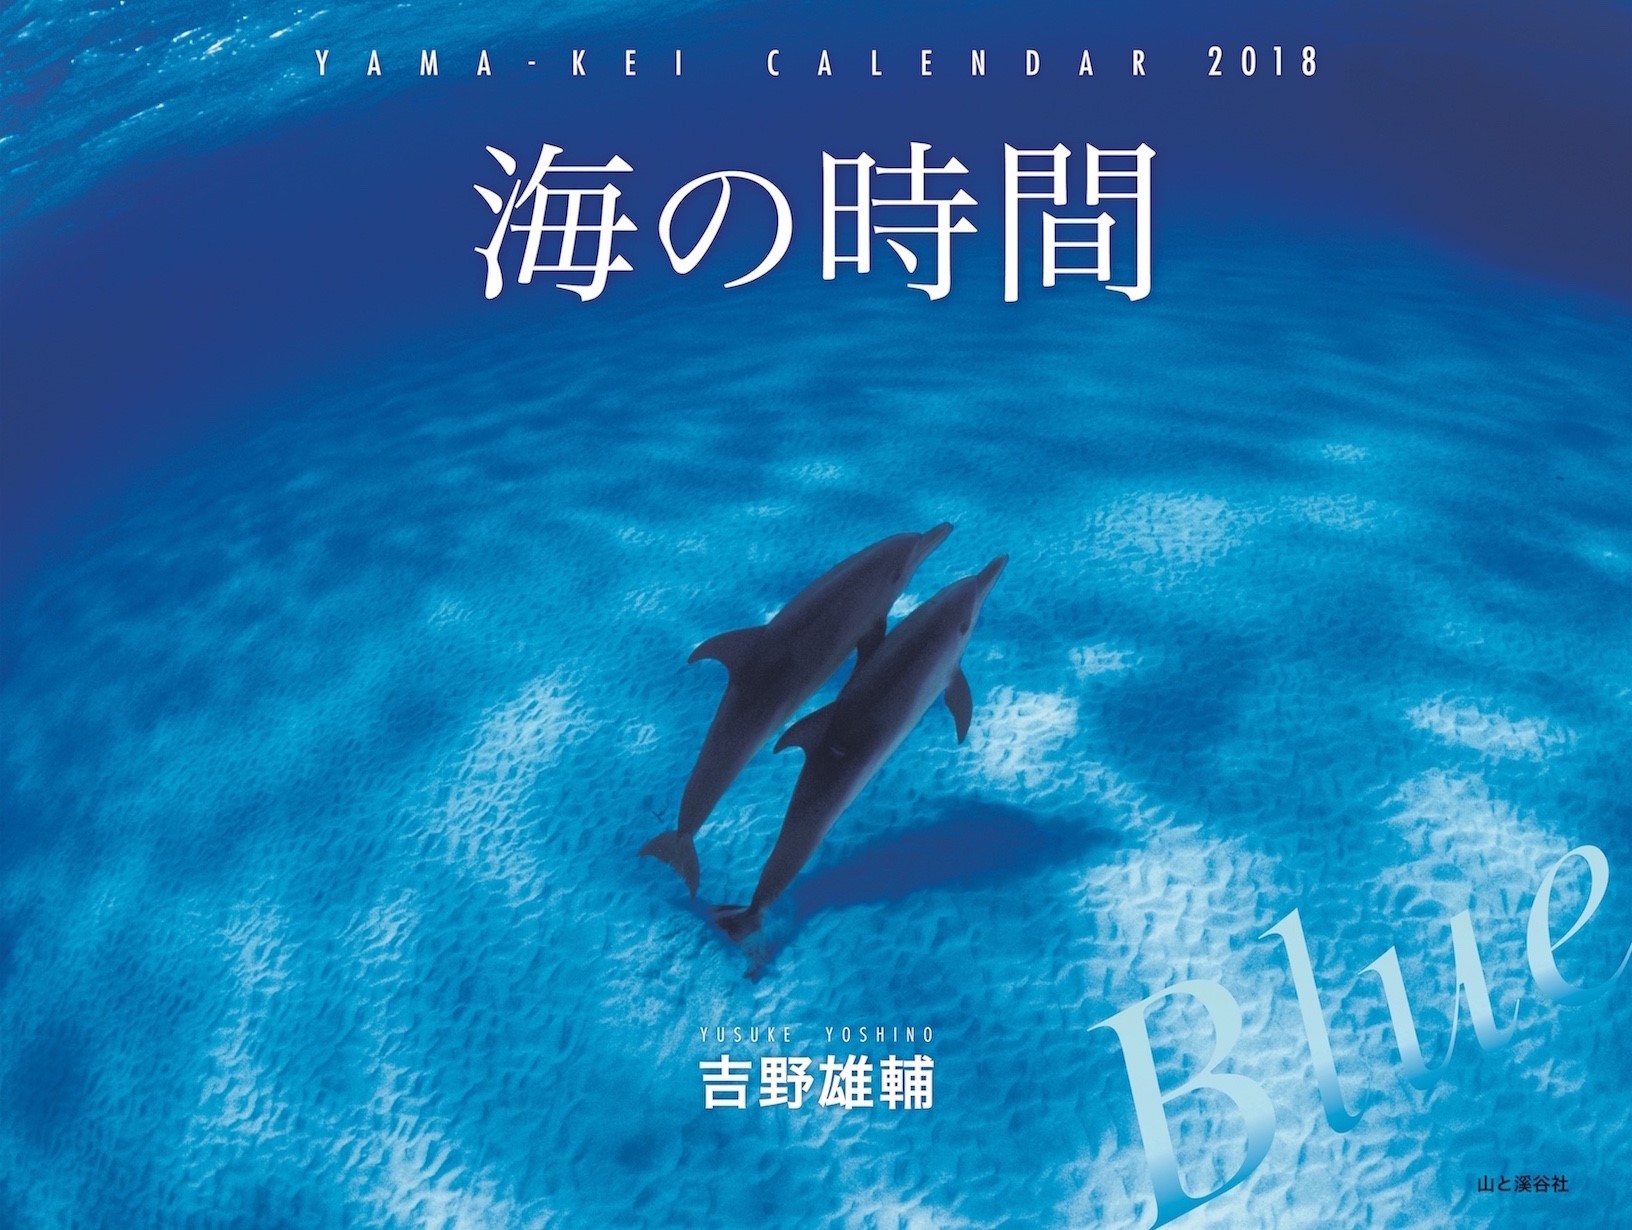 海洋写真家・吉野雄輔氏の2018年カレンダー「海の時間 Blue」が発売！